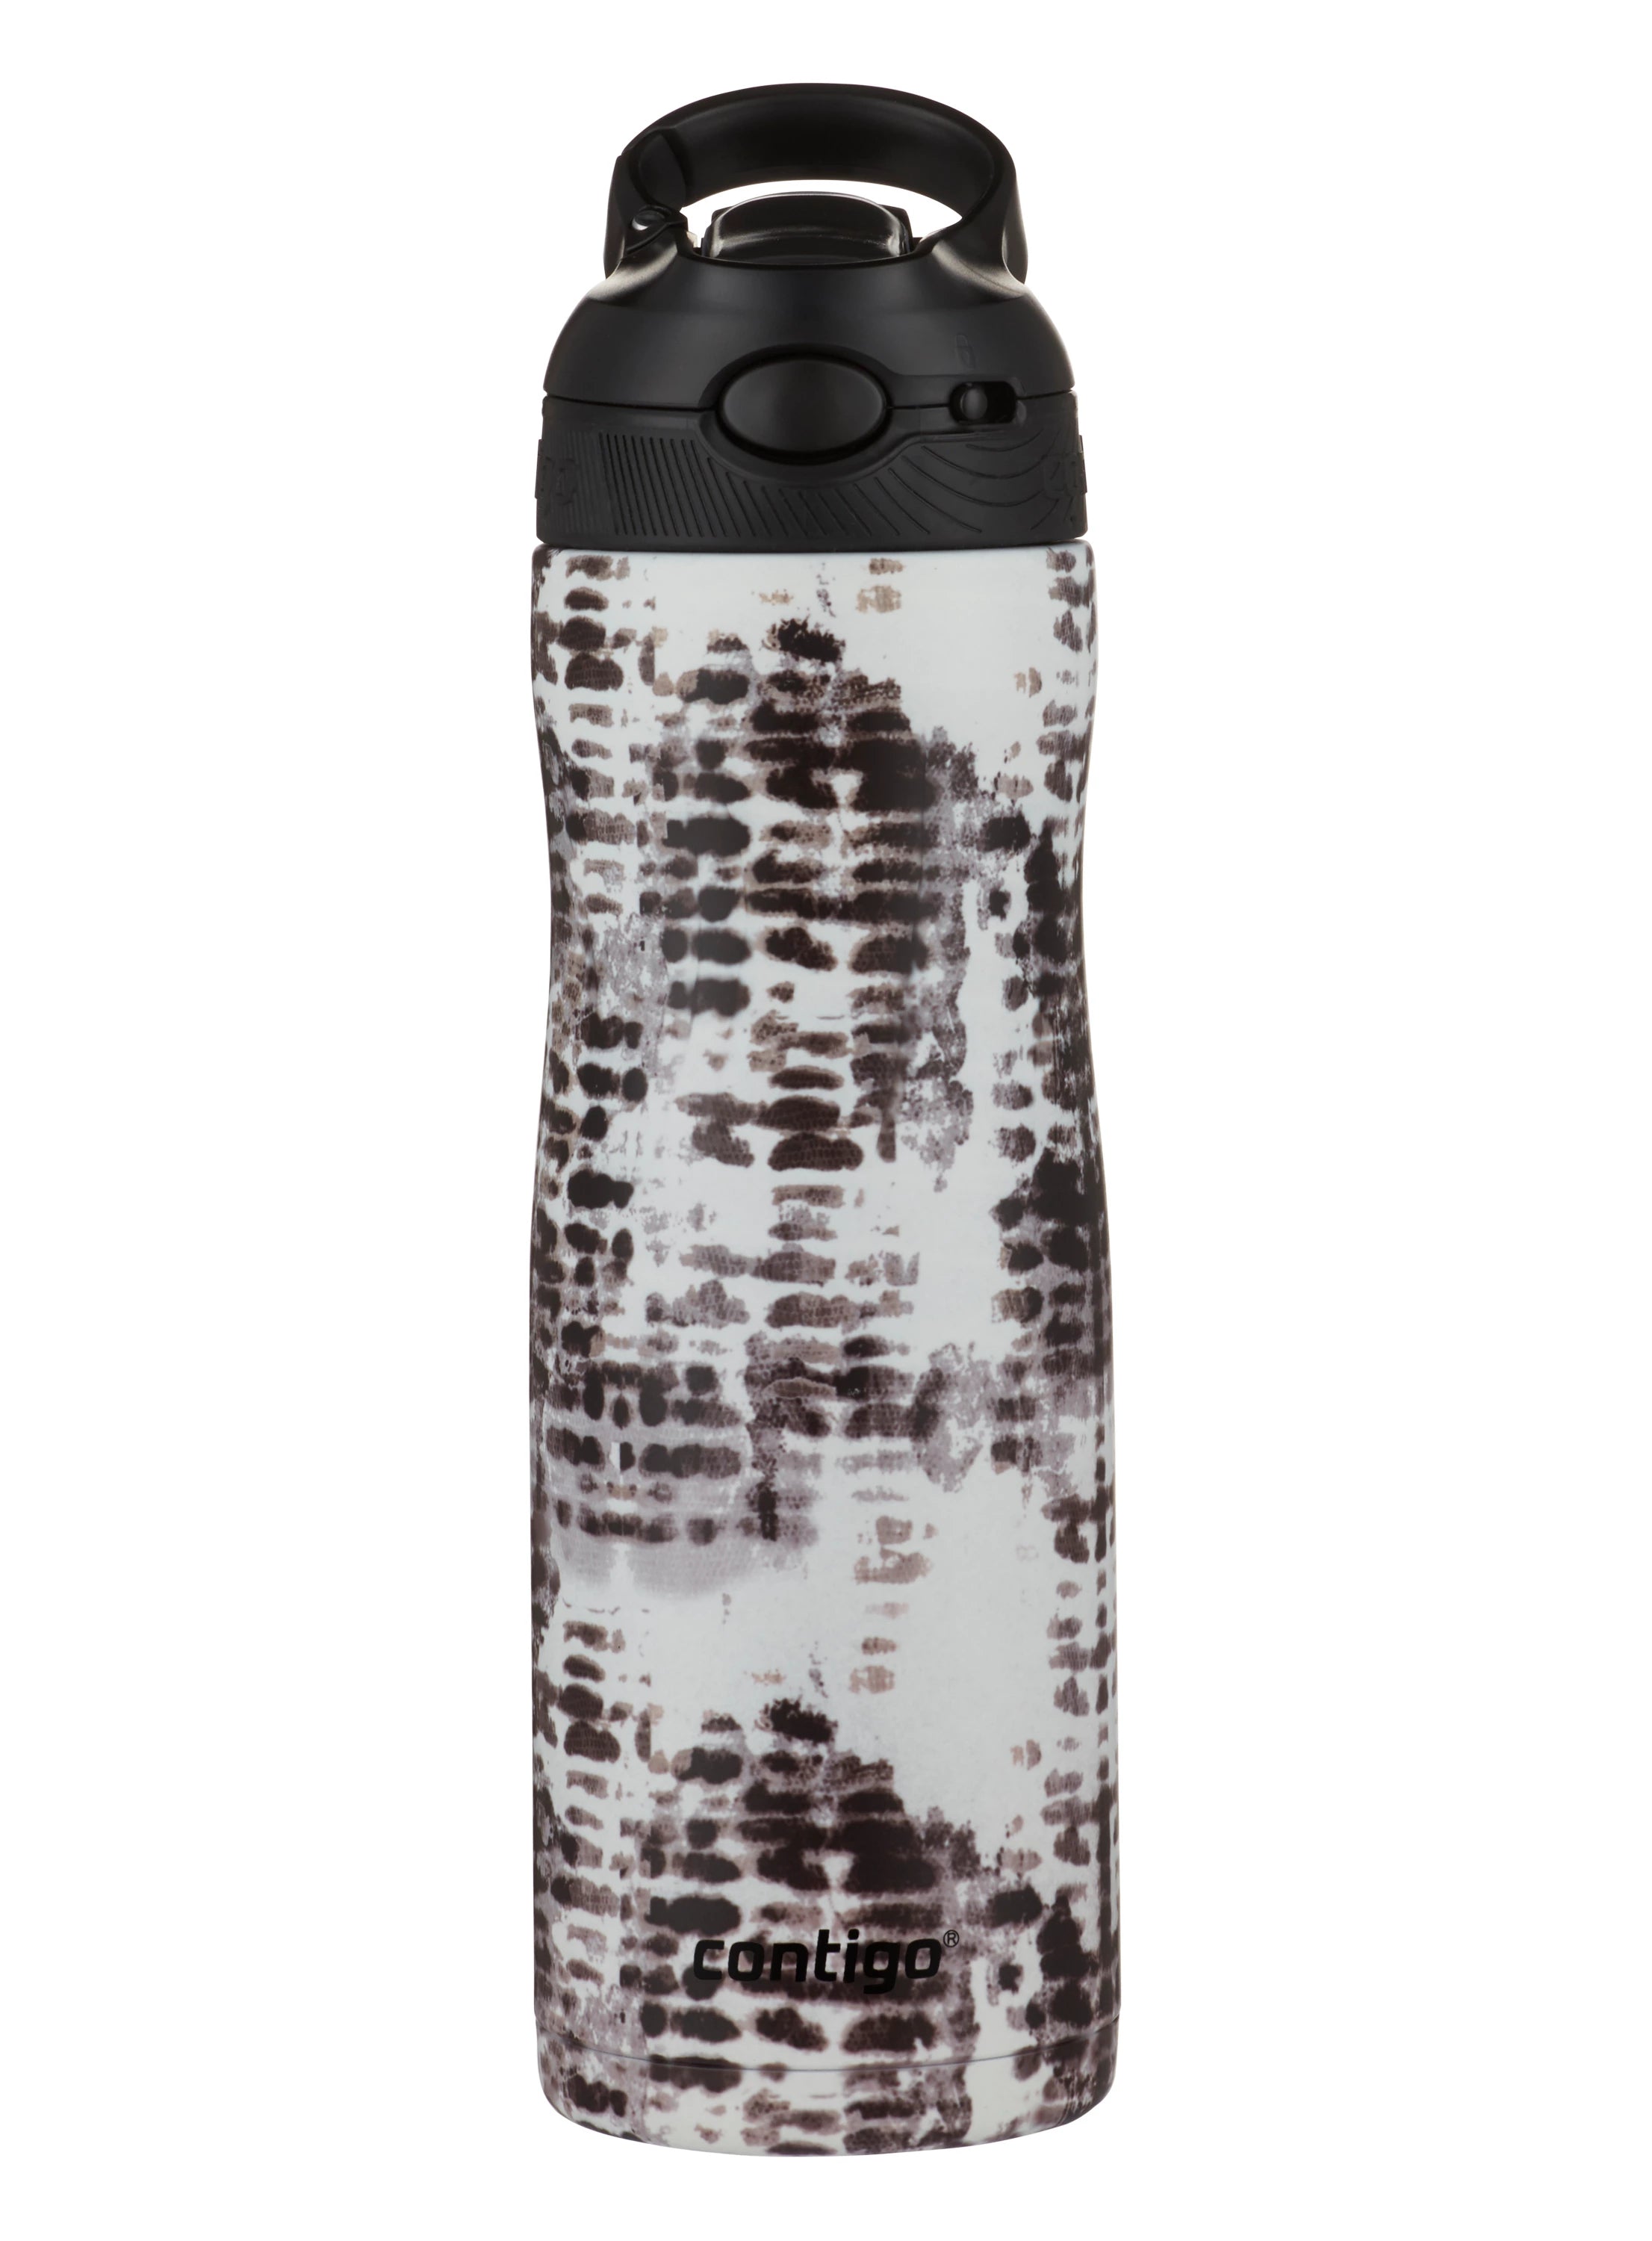 زجاجة مياه من الفولاذ المقاوم للصدأ معزولة بتفريغ الهواء من كونتيجو آشلاند كوتور تشيل، 590 مل